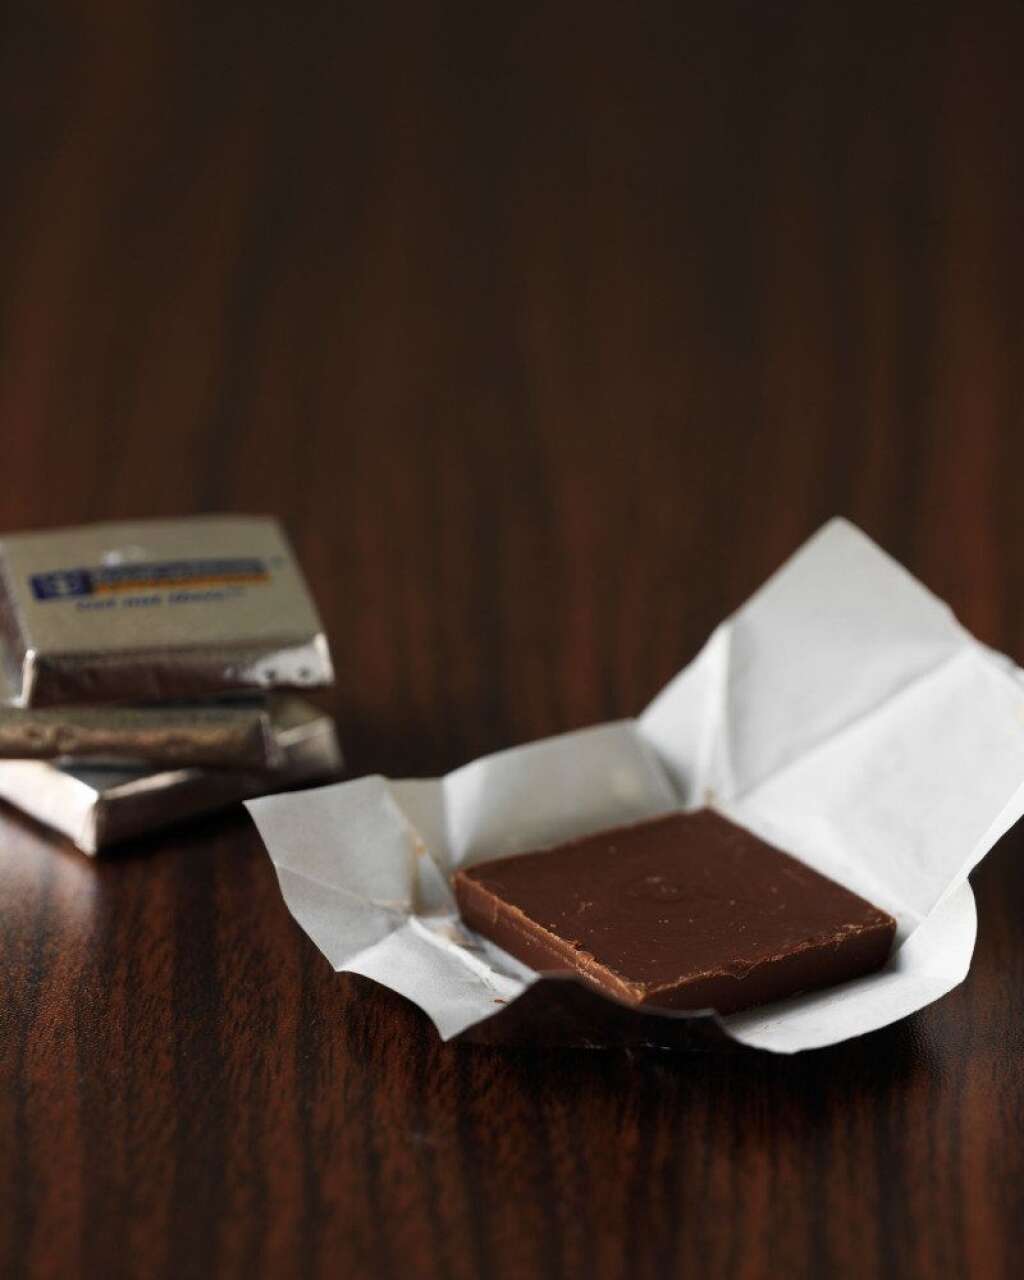 Manger un carré de chocolat - On en aura jamais fini avec le chocolat noir et ses nombreux bénéfices pour la santé, notamment pour le coeur. Nous vous le donnons dans le mille, manger du chocolat <a href="http://www.livescience.com/7974-chocolate-reduces-stress-study-finds.html" target="_hplink">réduit aussi le stress</a>.    D'après une étude publiée par <a href="http://www.livescience.com/7974-chocolate-reduces-stress-study-finds.html" target="_hplink">LiveScience</a> manger quelques carrés de chocolat noir par jour pendant une période de deux semaines réduit la quantité de cortisol dans le sangl. Cette étude a été publiée pour la première fois en 2009 dans la publication scientifique <em>Proteome Research</em>.     Bien entendu, le chocolat cela reste du sucre et donc des calories. A consommer avec modération!